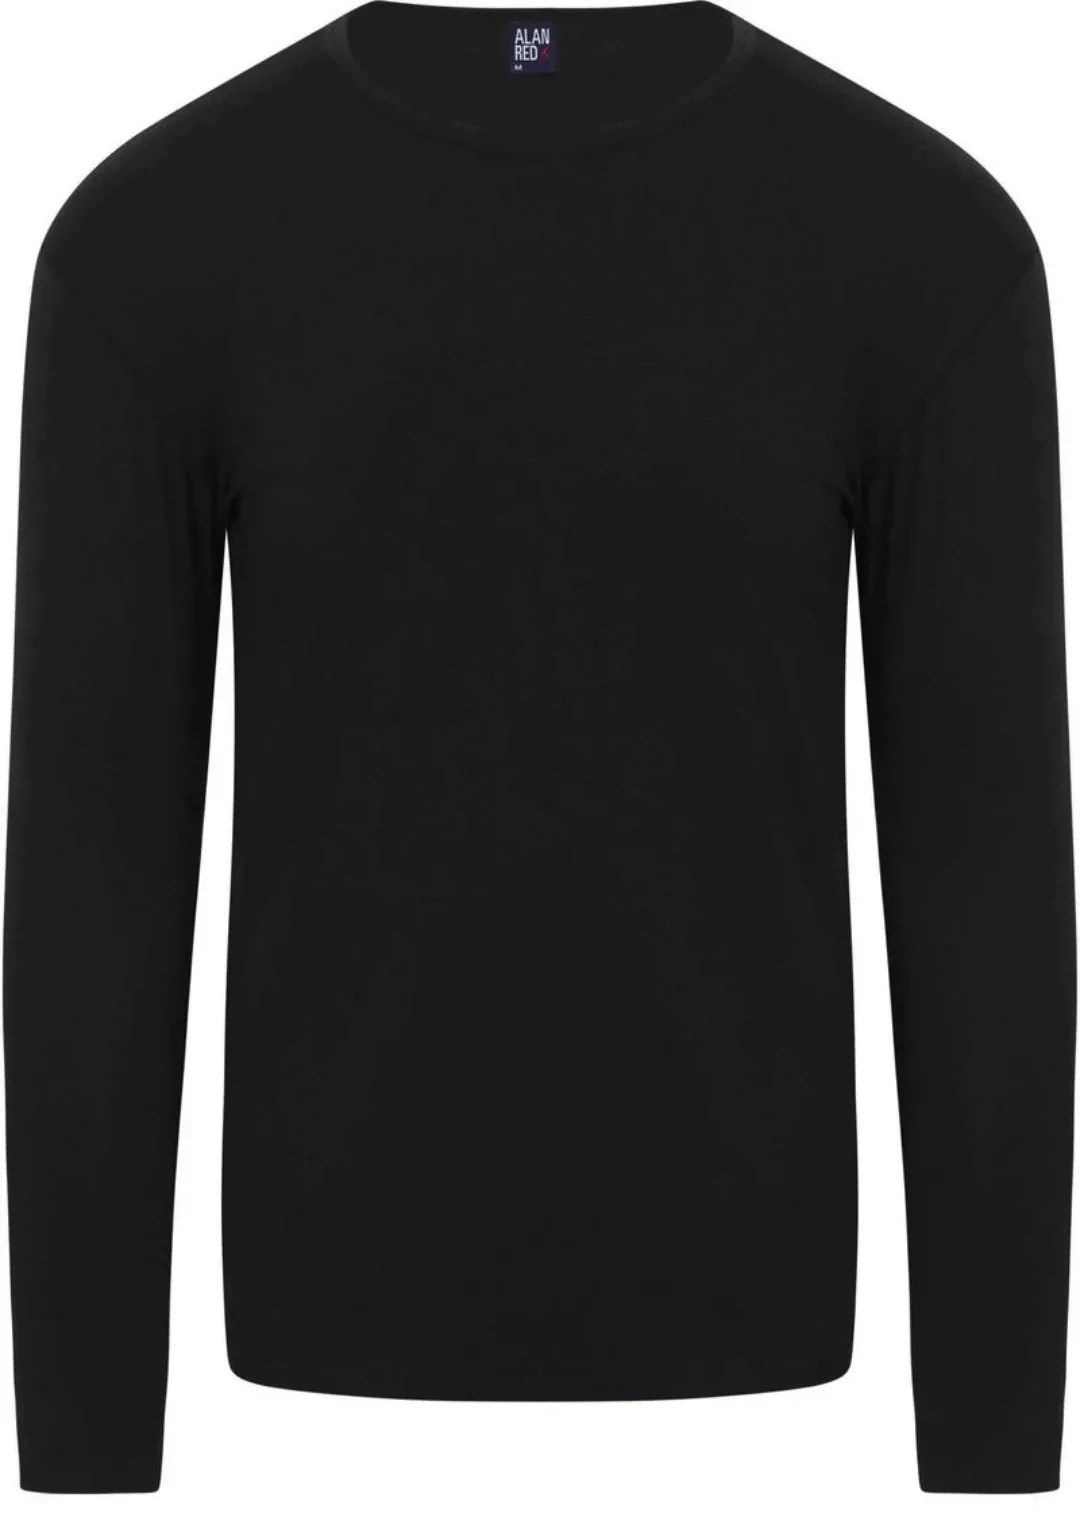 Alan Red Olbia Longsleeve T-shirt Schwarz - Größe S günstig online kaufen